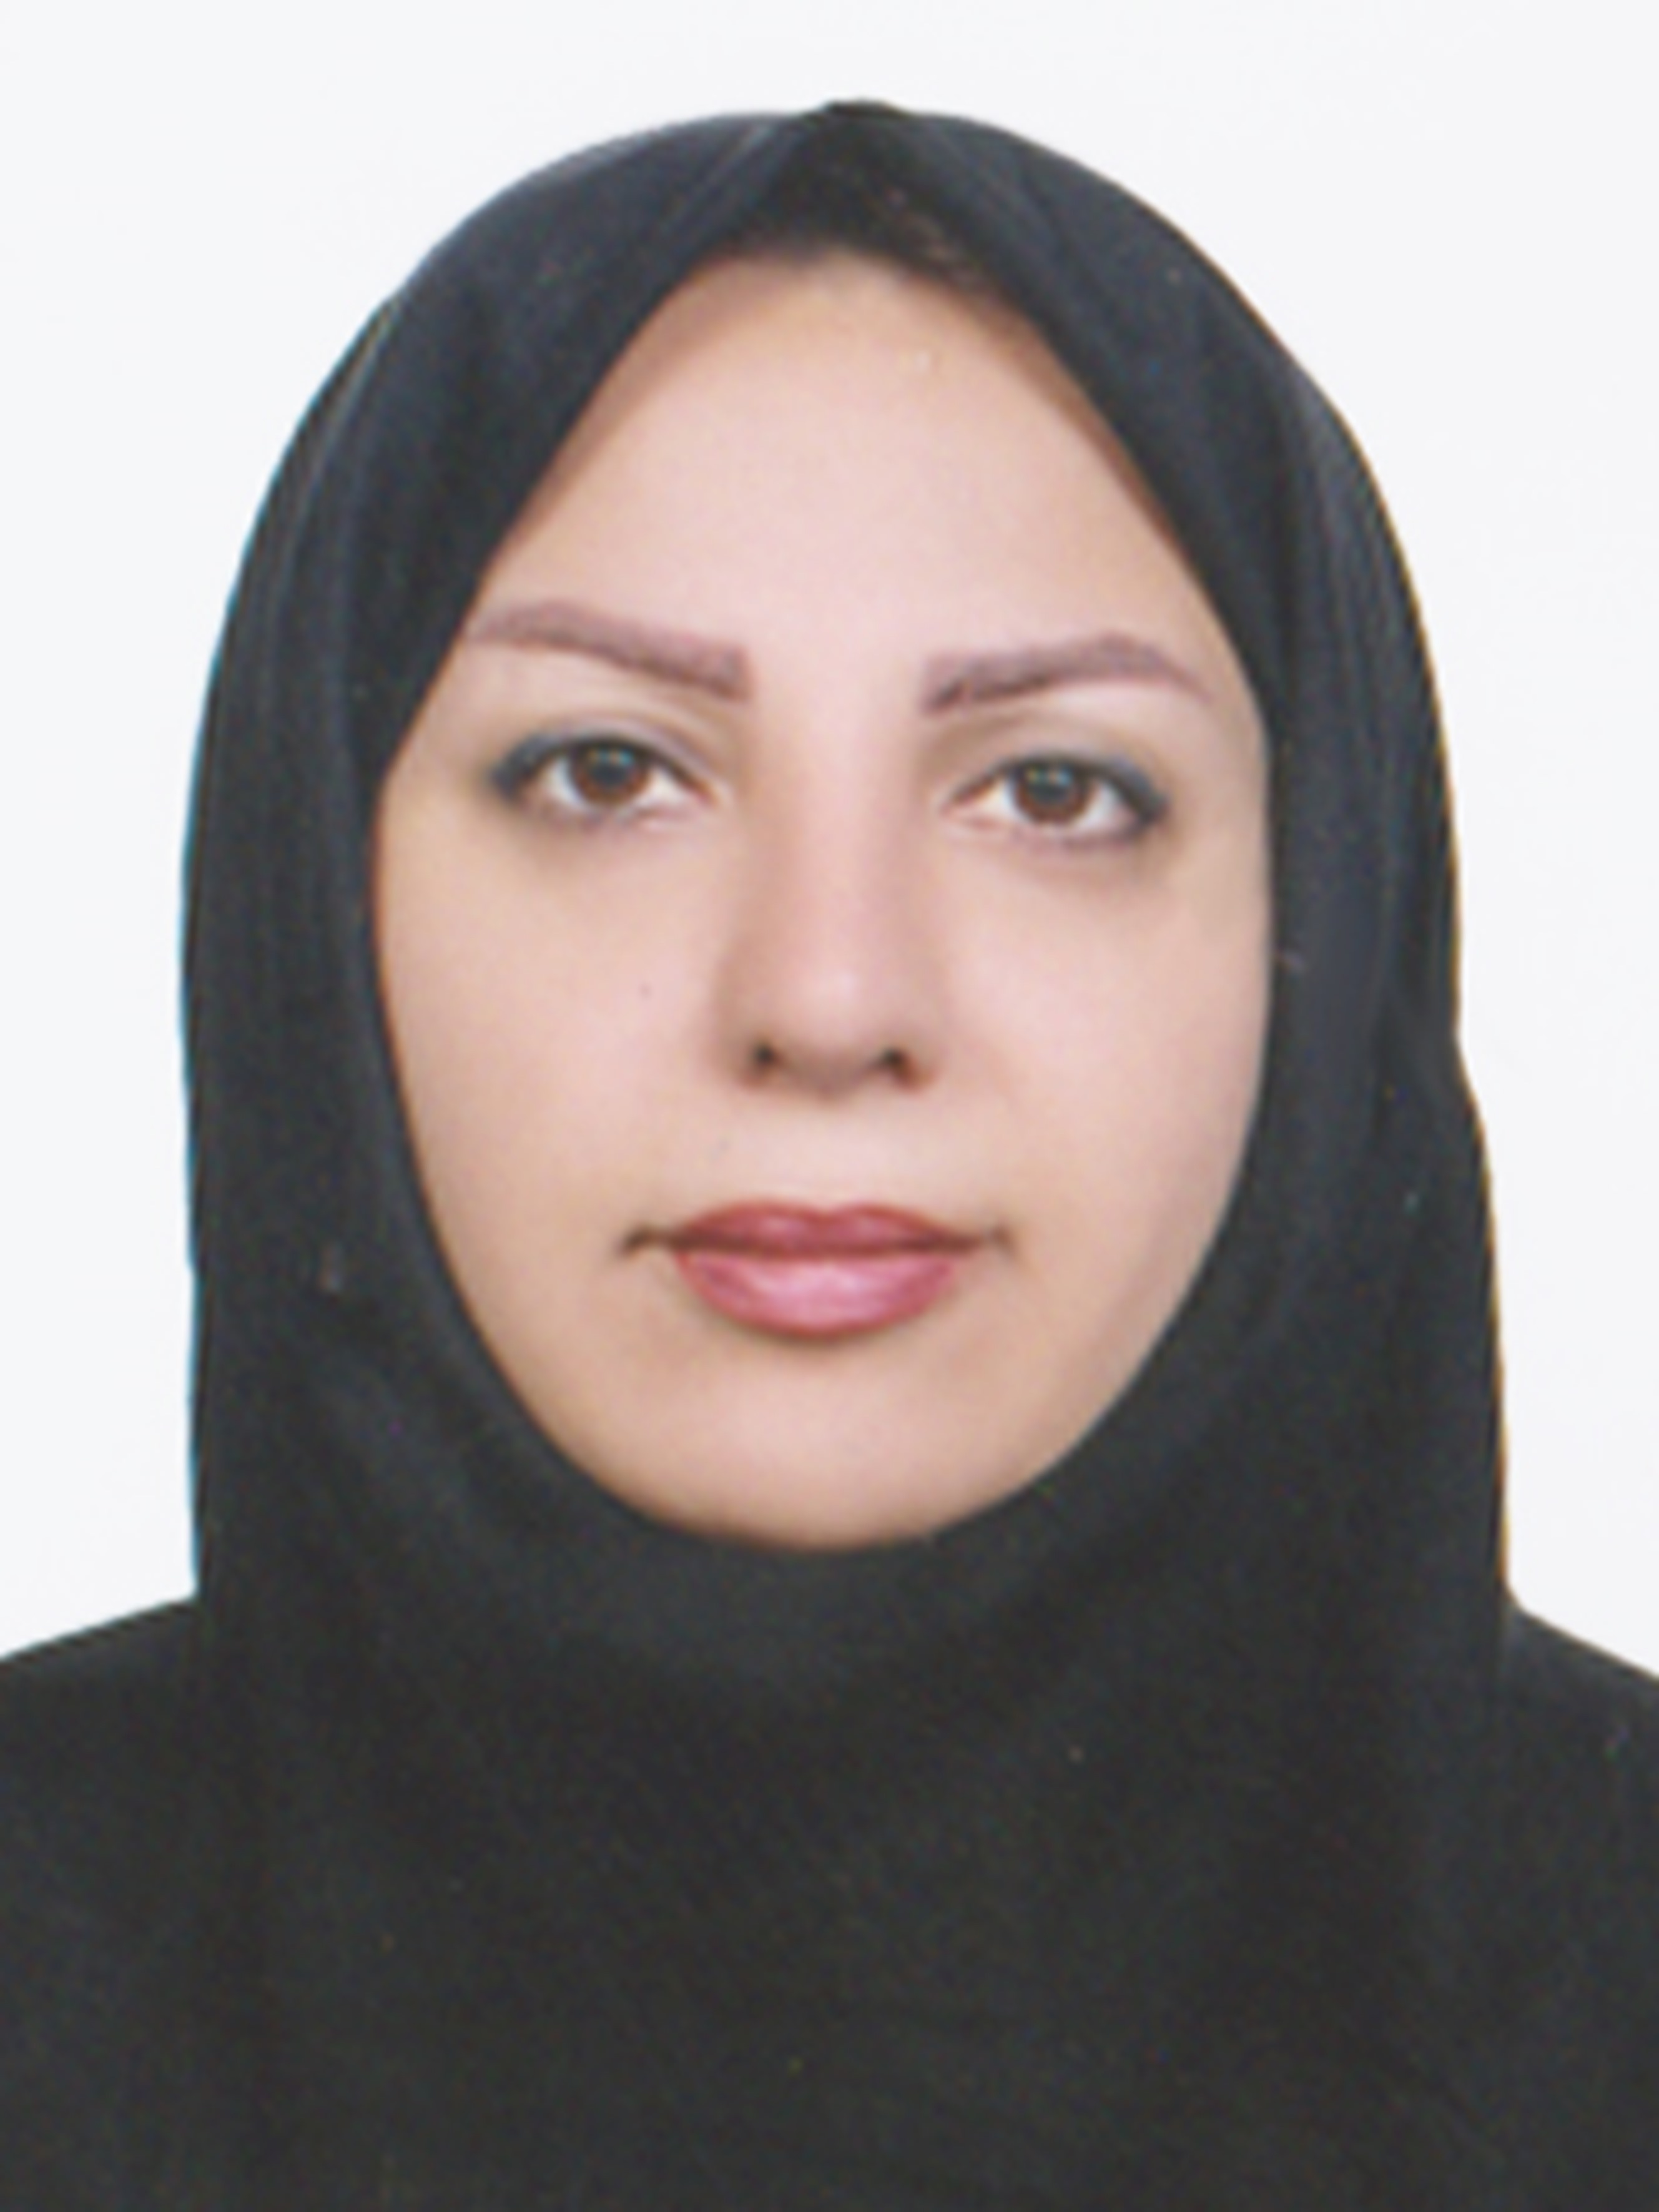 دکتر سارا میرزاجانی